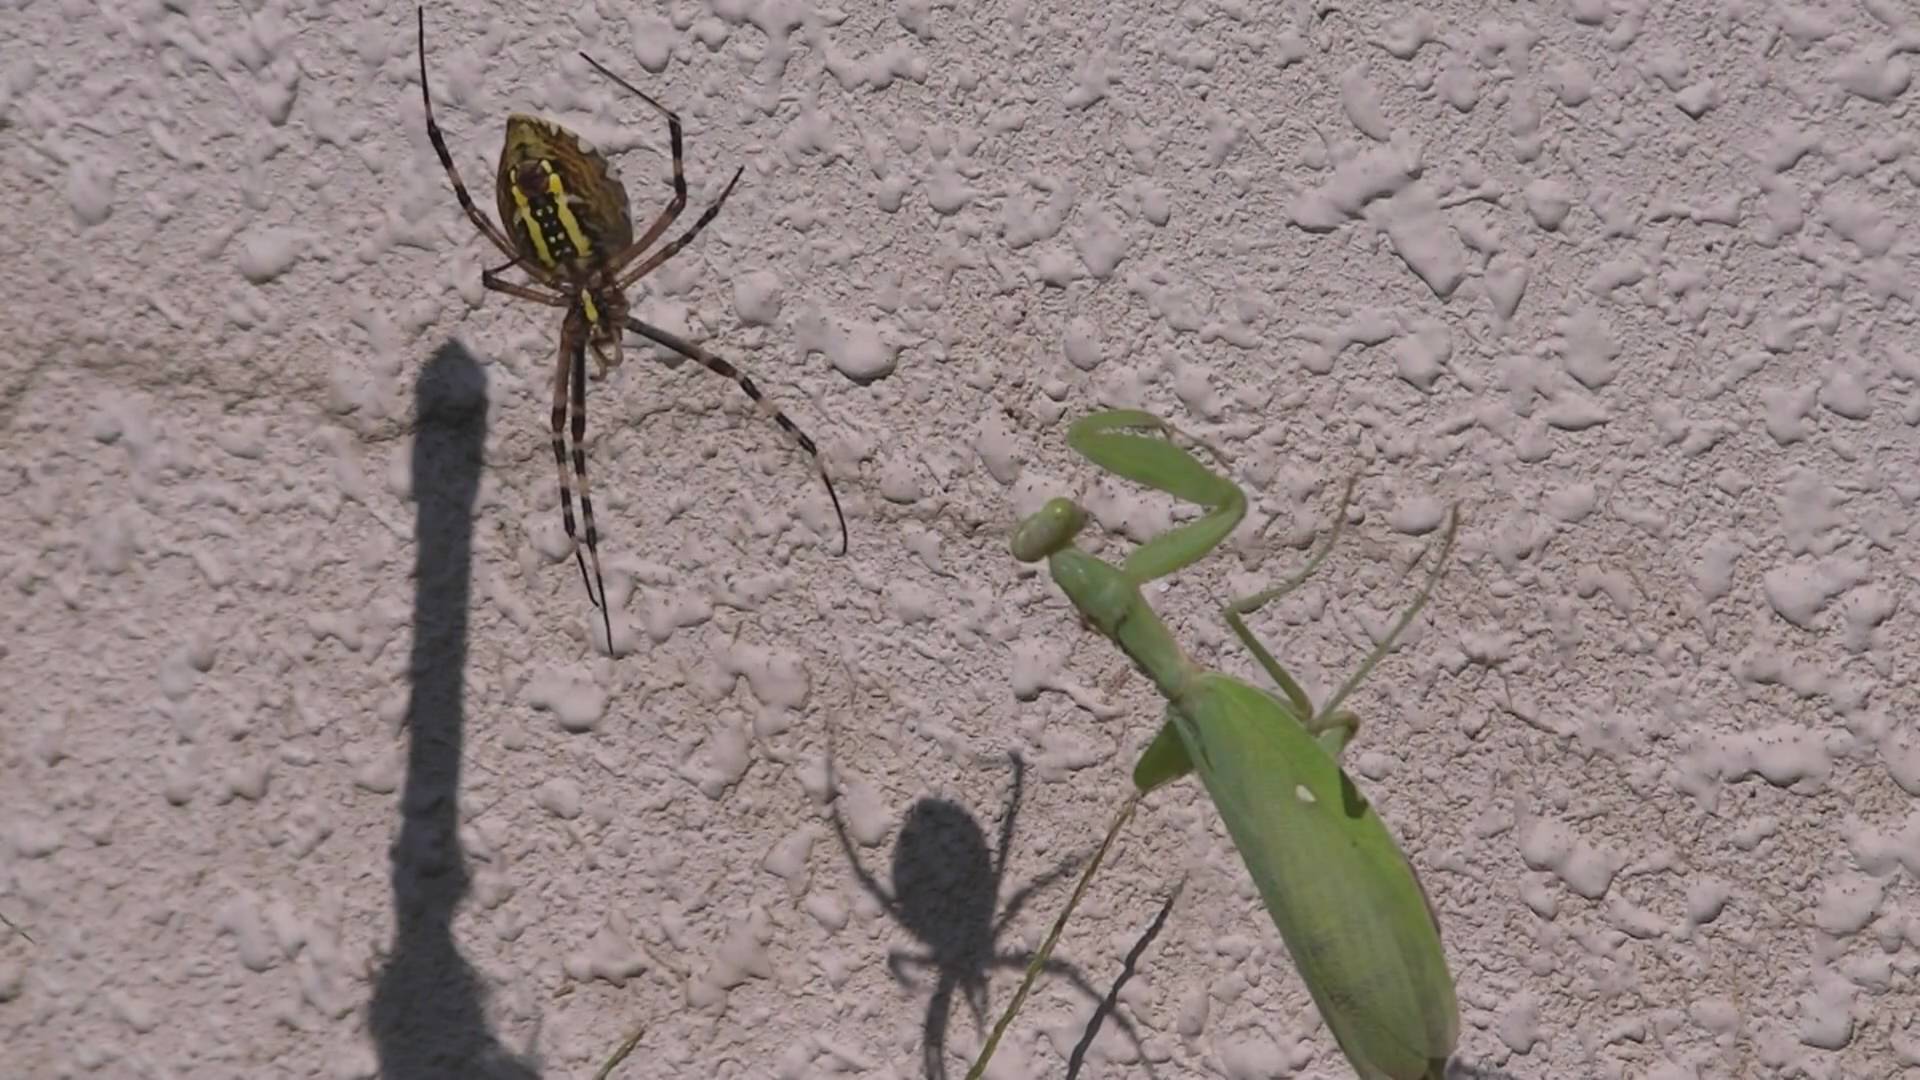 Praying Mantis VS Spider かまきりＶＳくも - YouTube